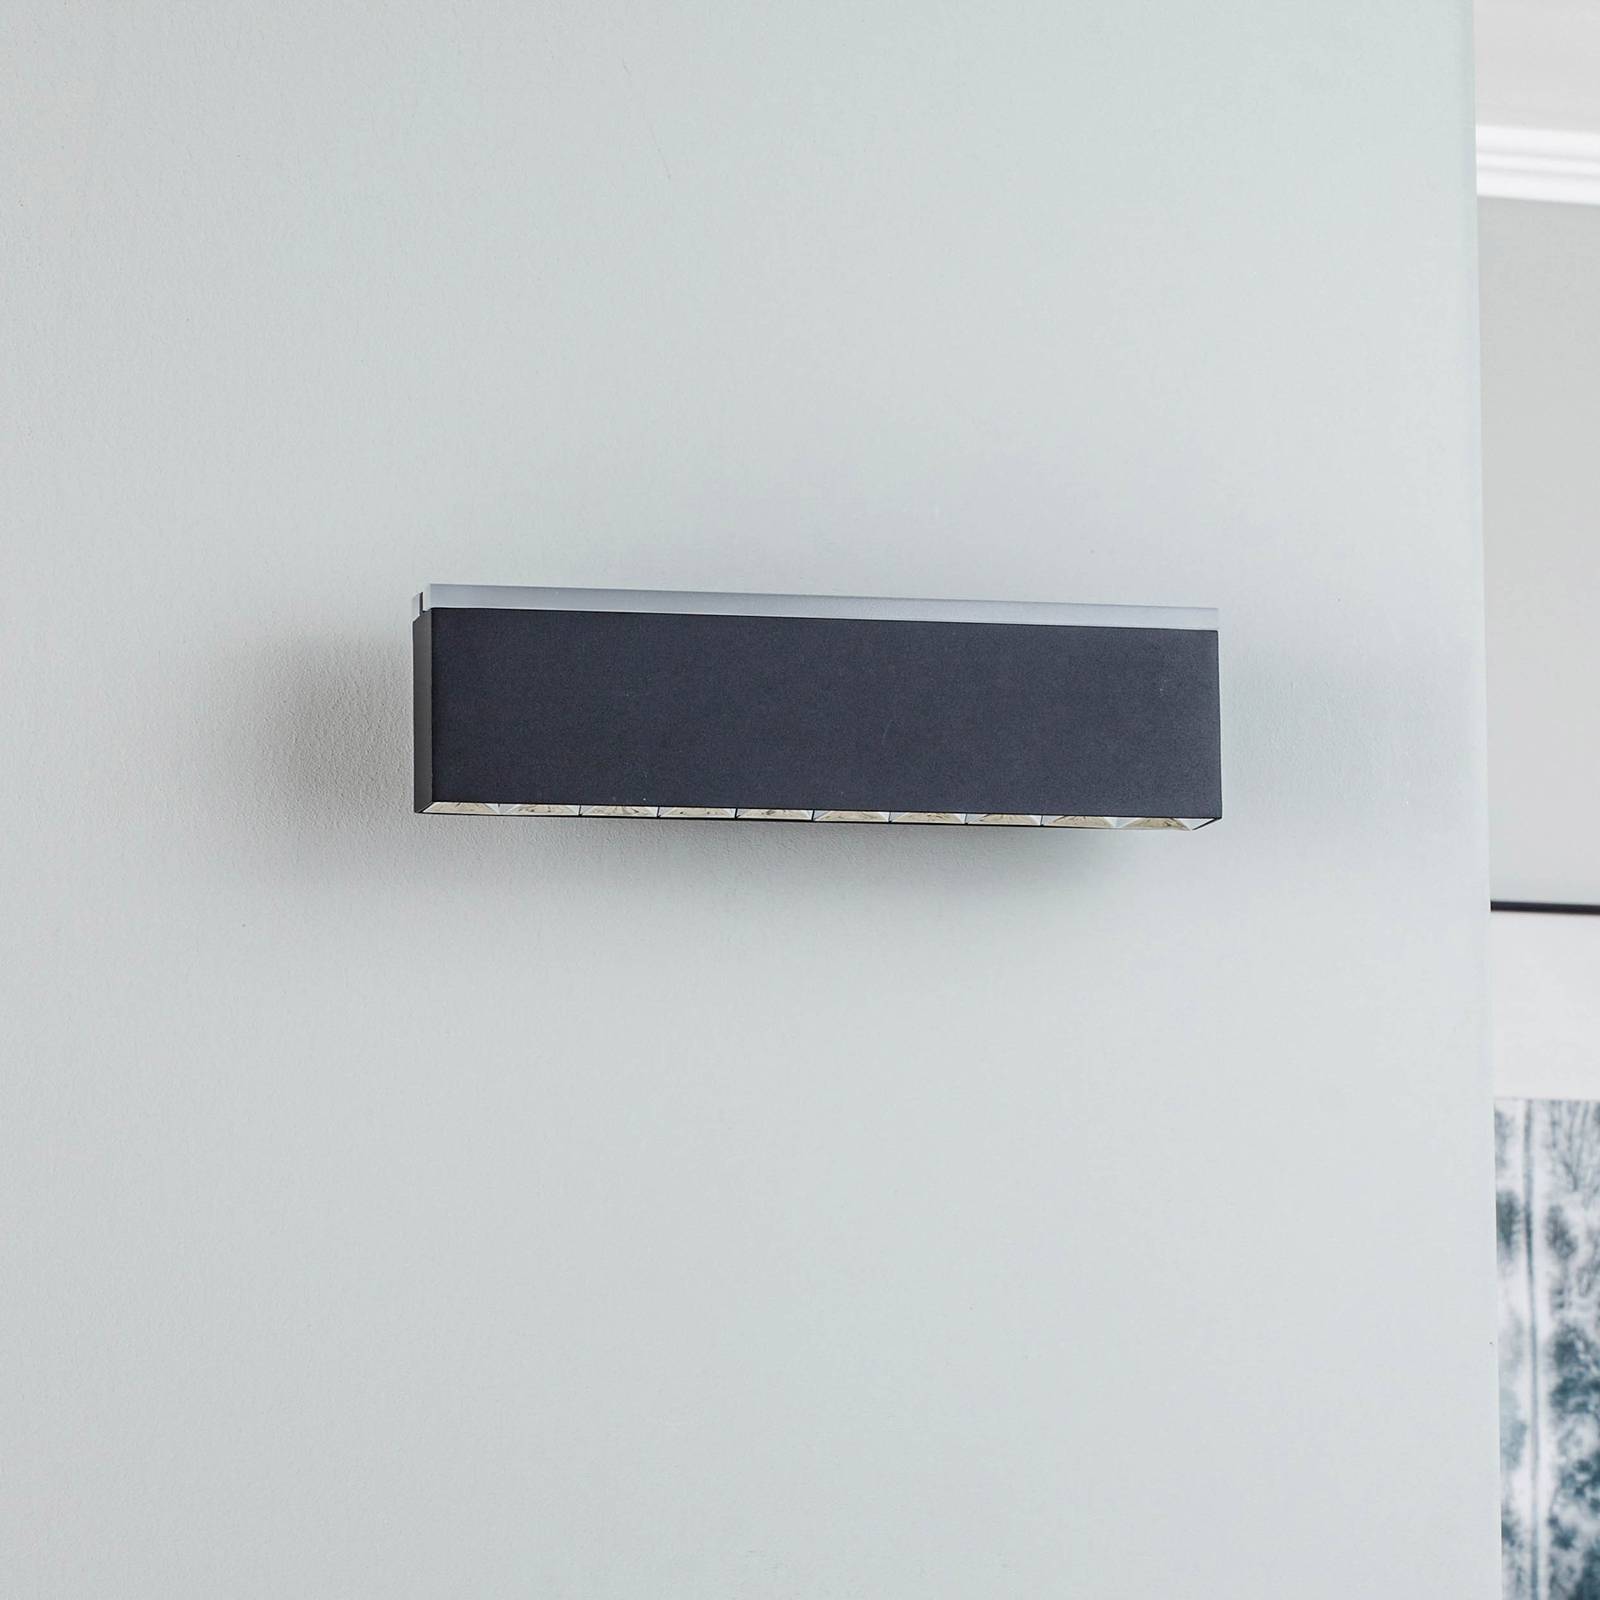 Lucande Henner LED wall light, black, 30 cm